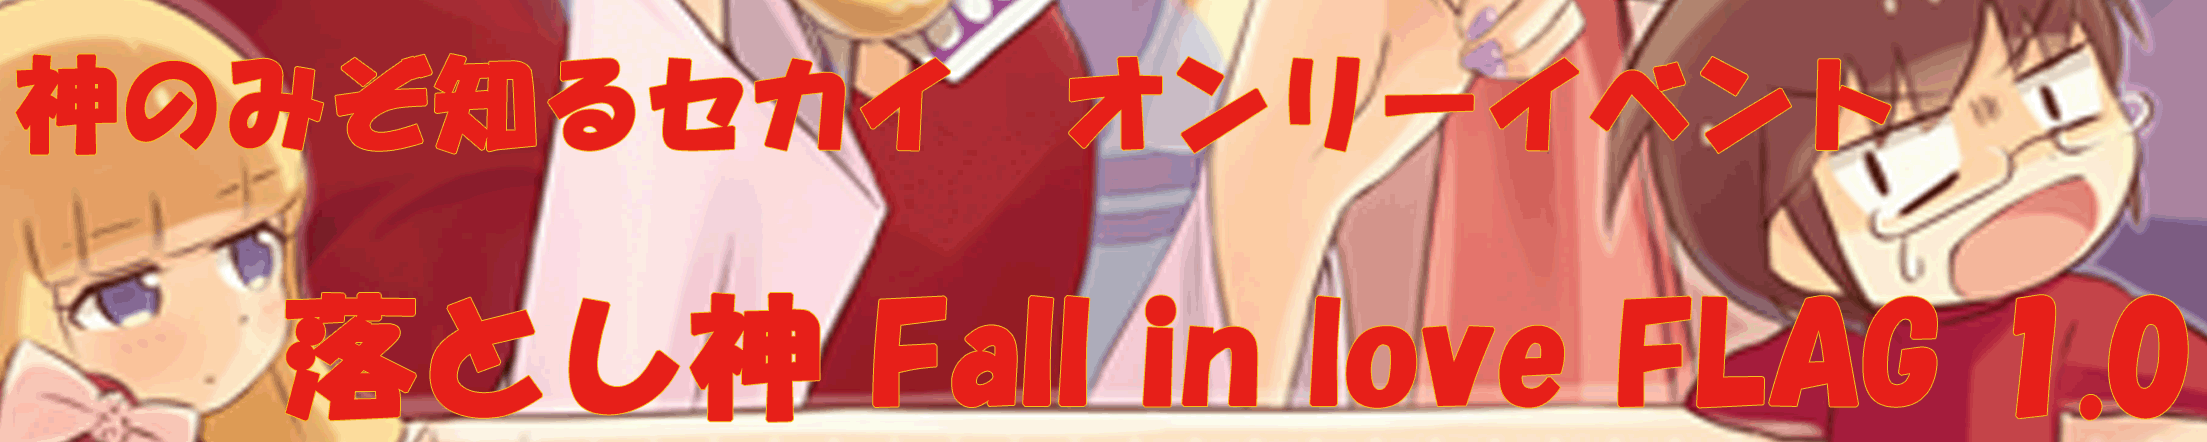 落とし神 Fall in love　FLAG 1.0